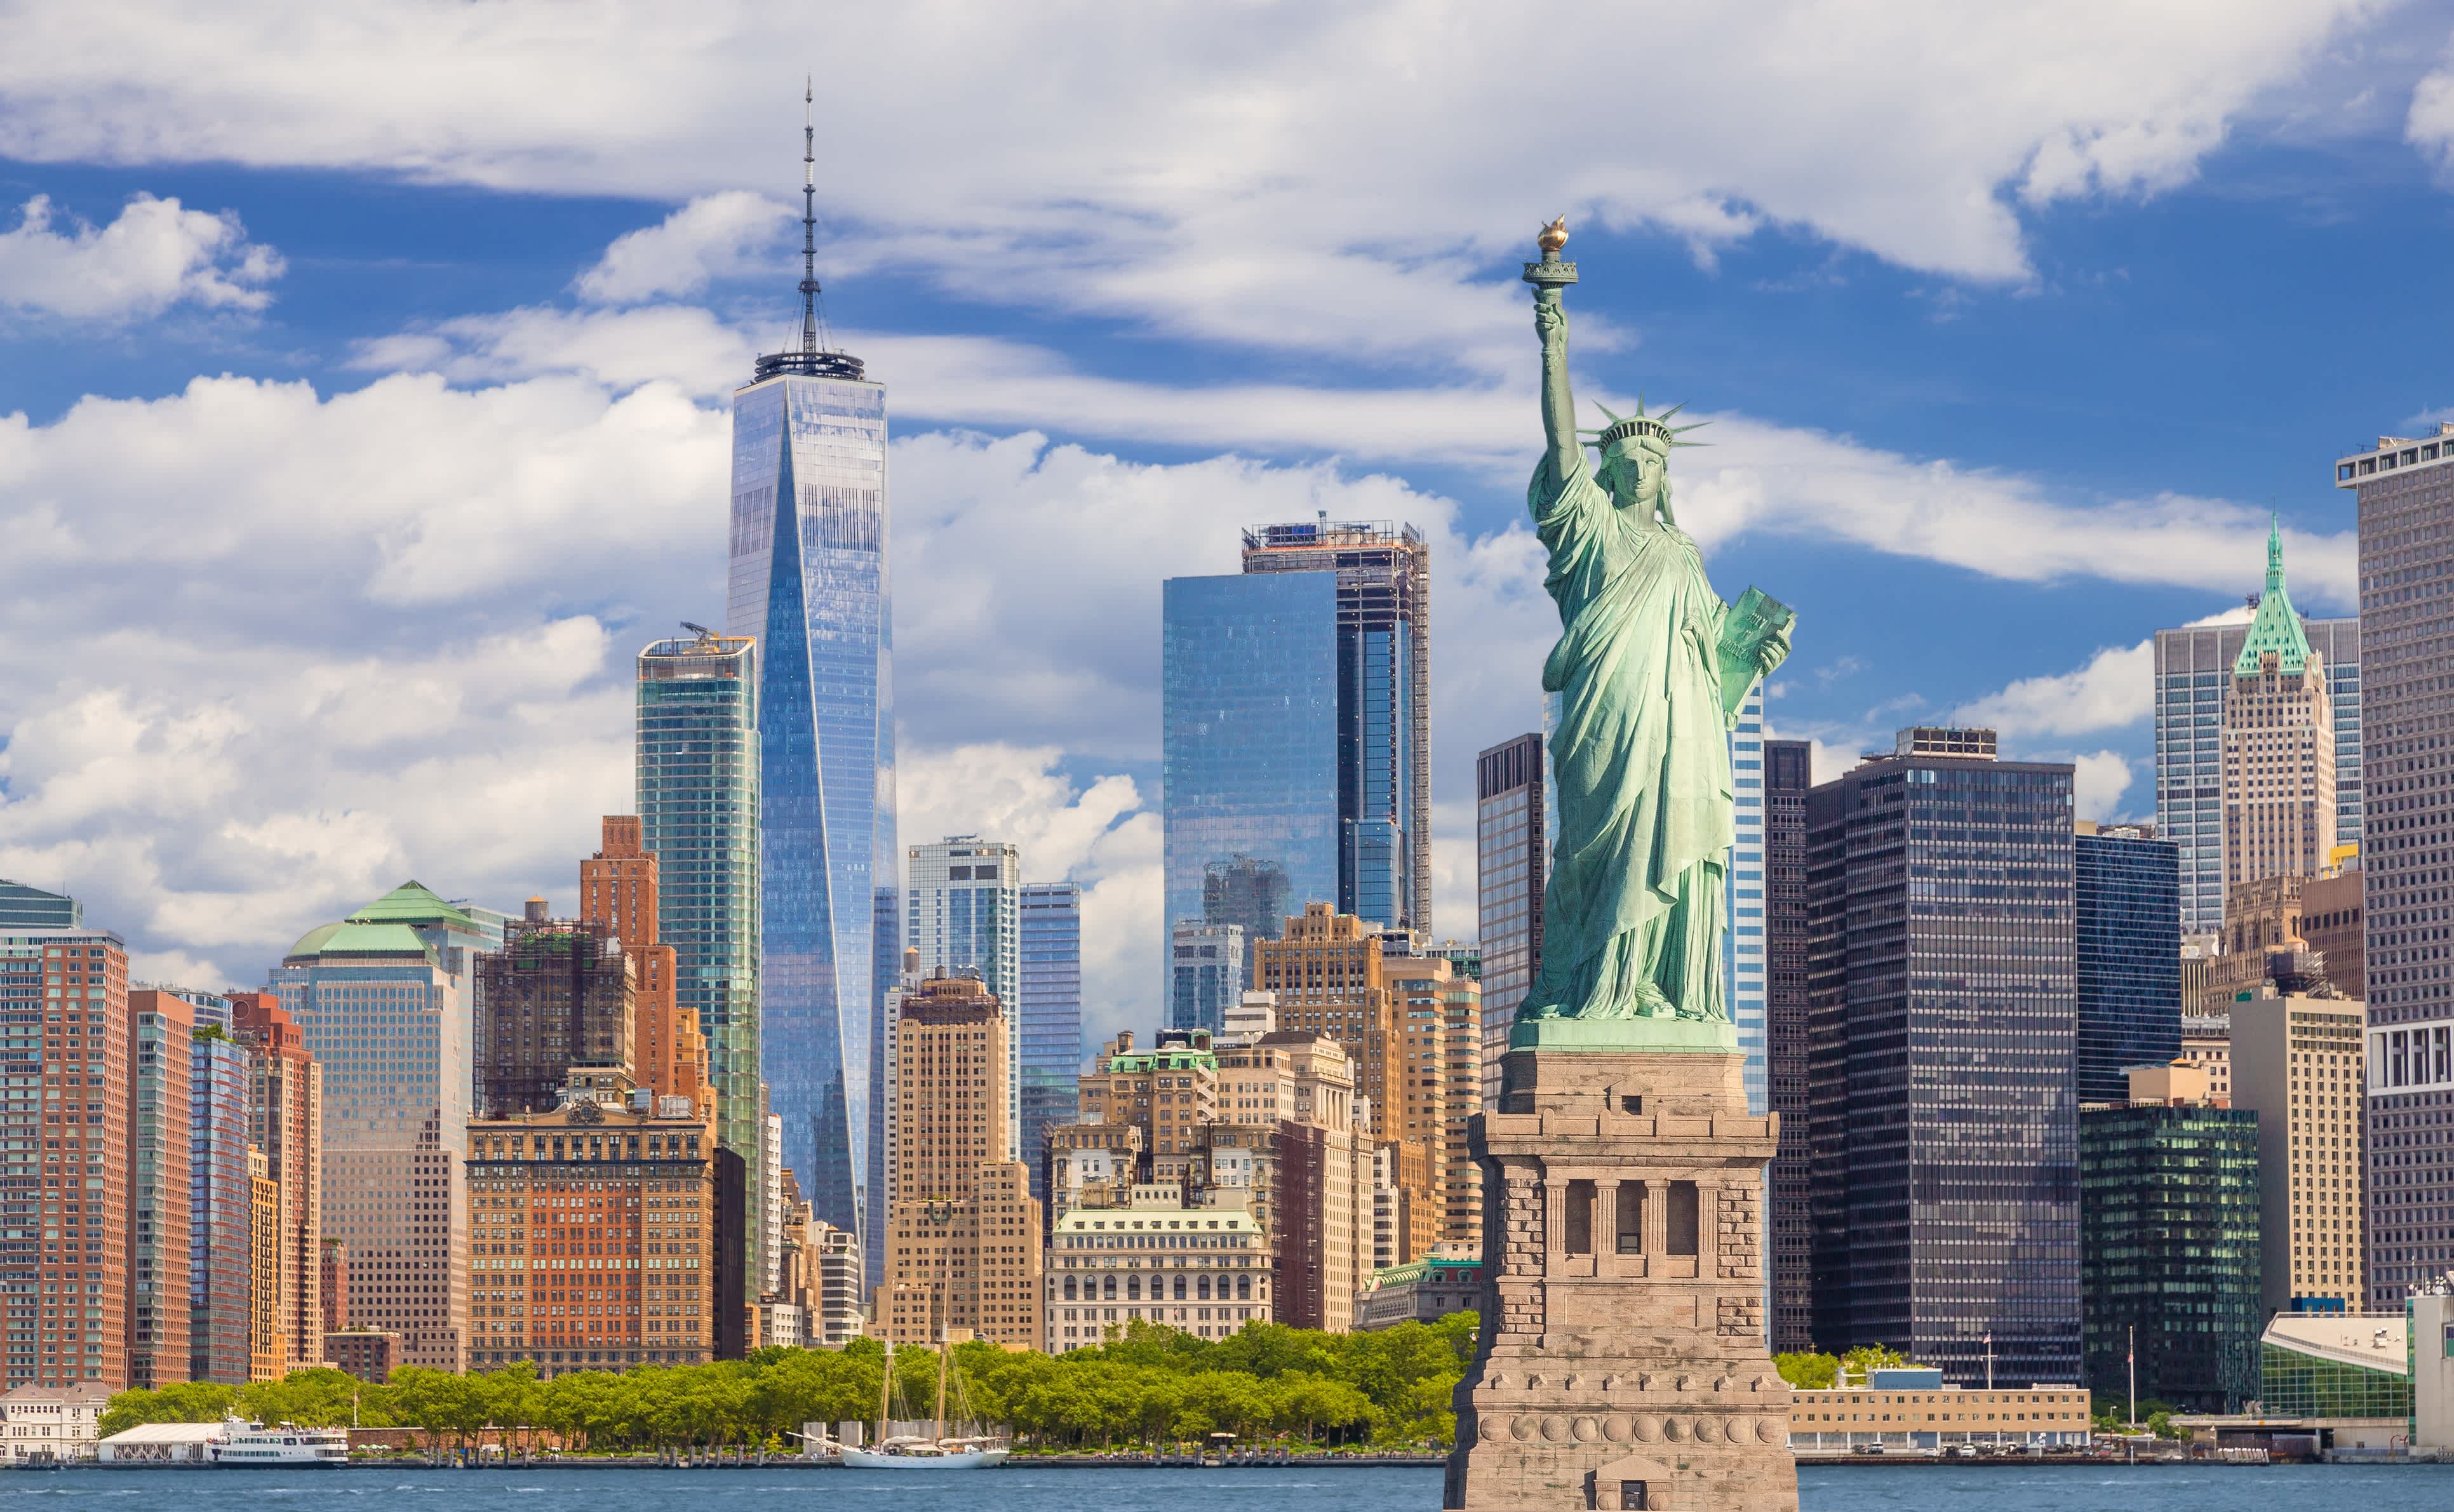 Statue de la Liberté et skyline de New York avec Financial District de Manhattan, World Trade Center et Battery Park.